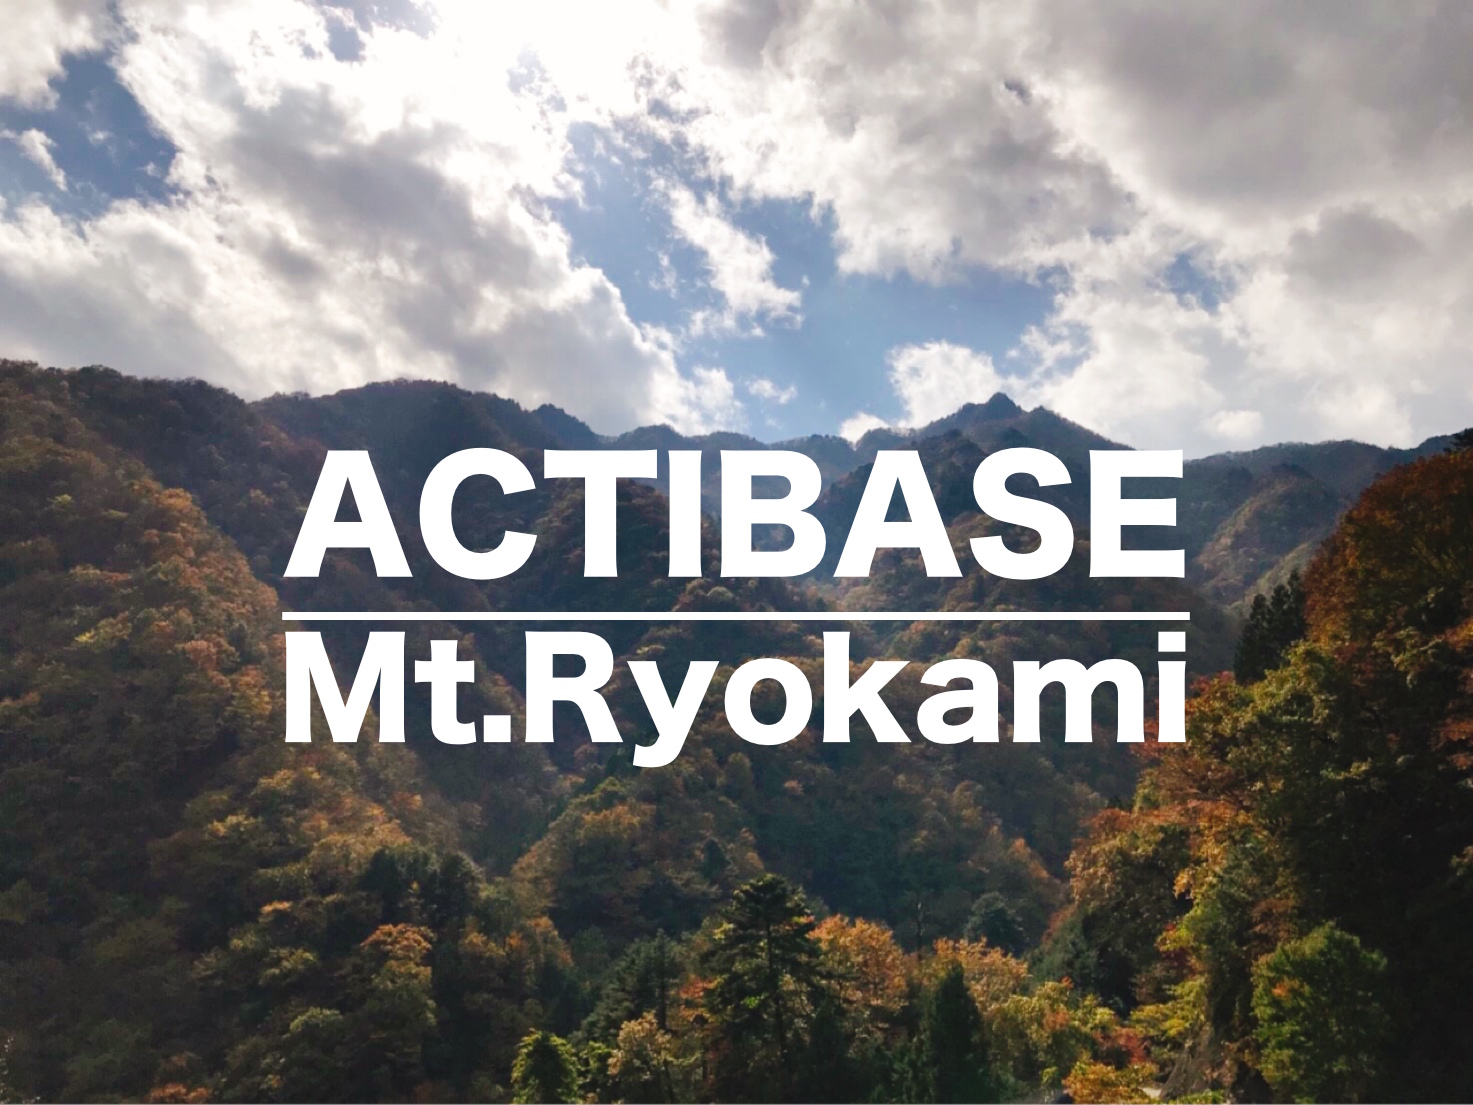 日本百名山 秩父の名峰 紅葉の両神山でテント泊登山 Actibase